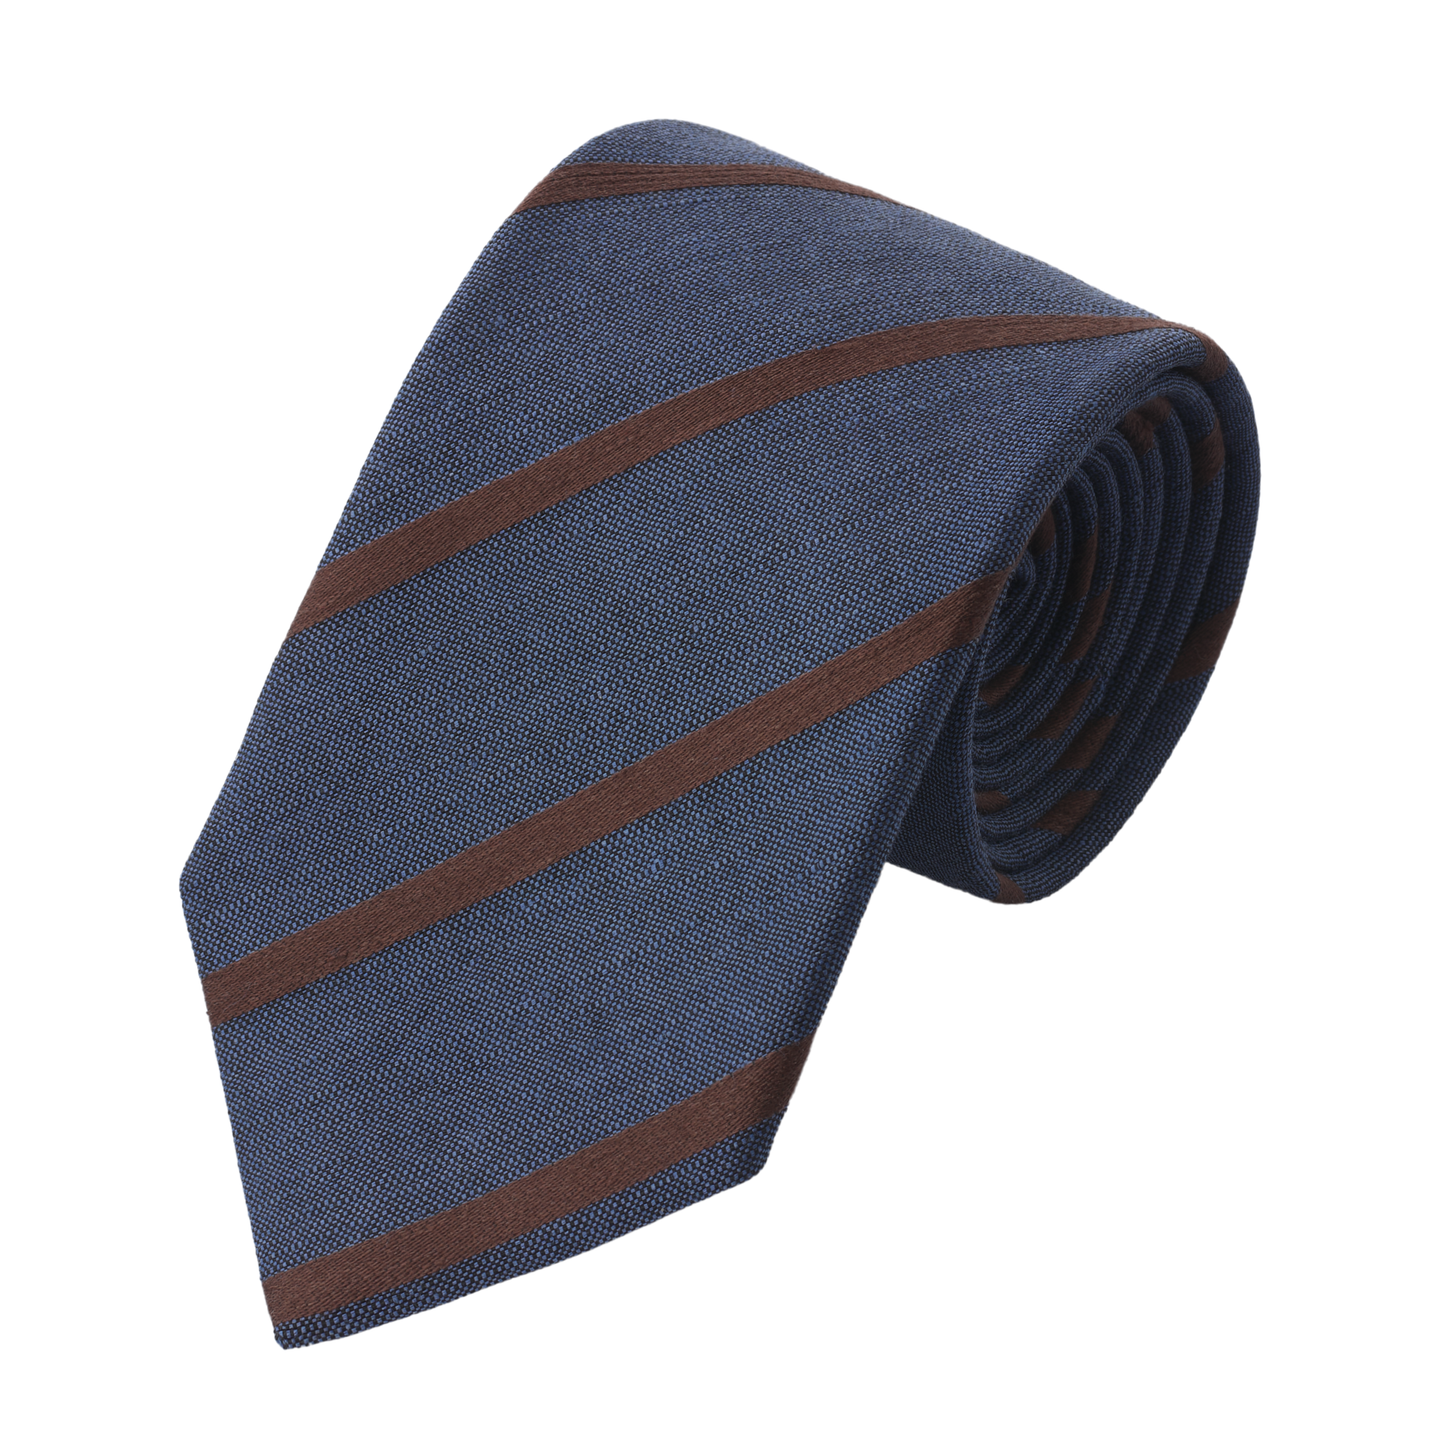 Regimental Lined Tie in Dark Blue and Brown